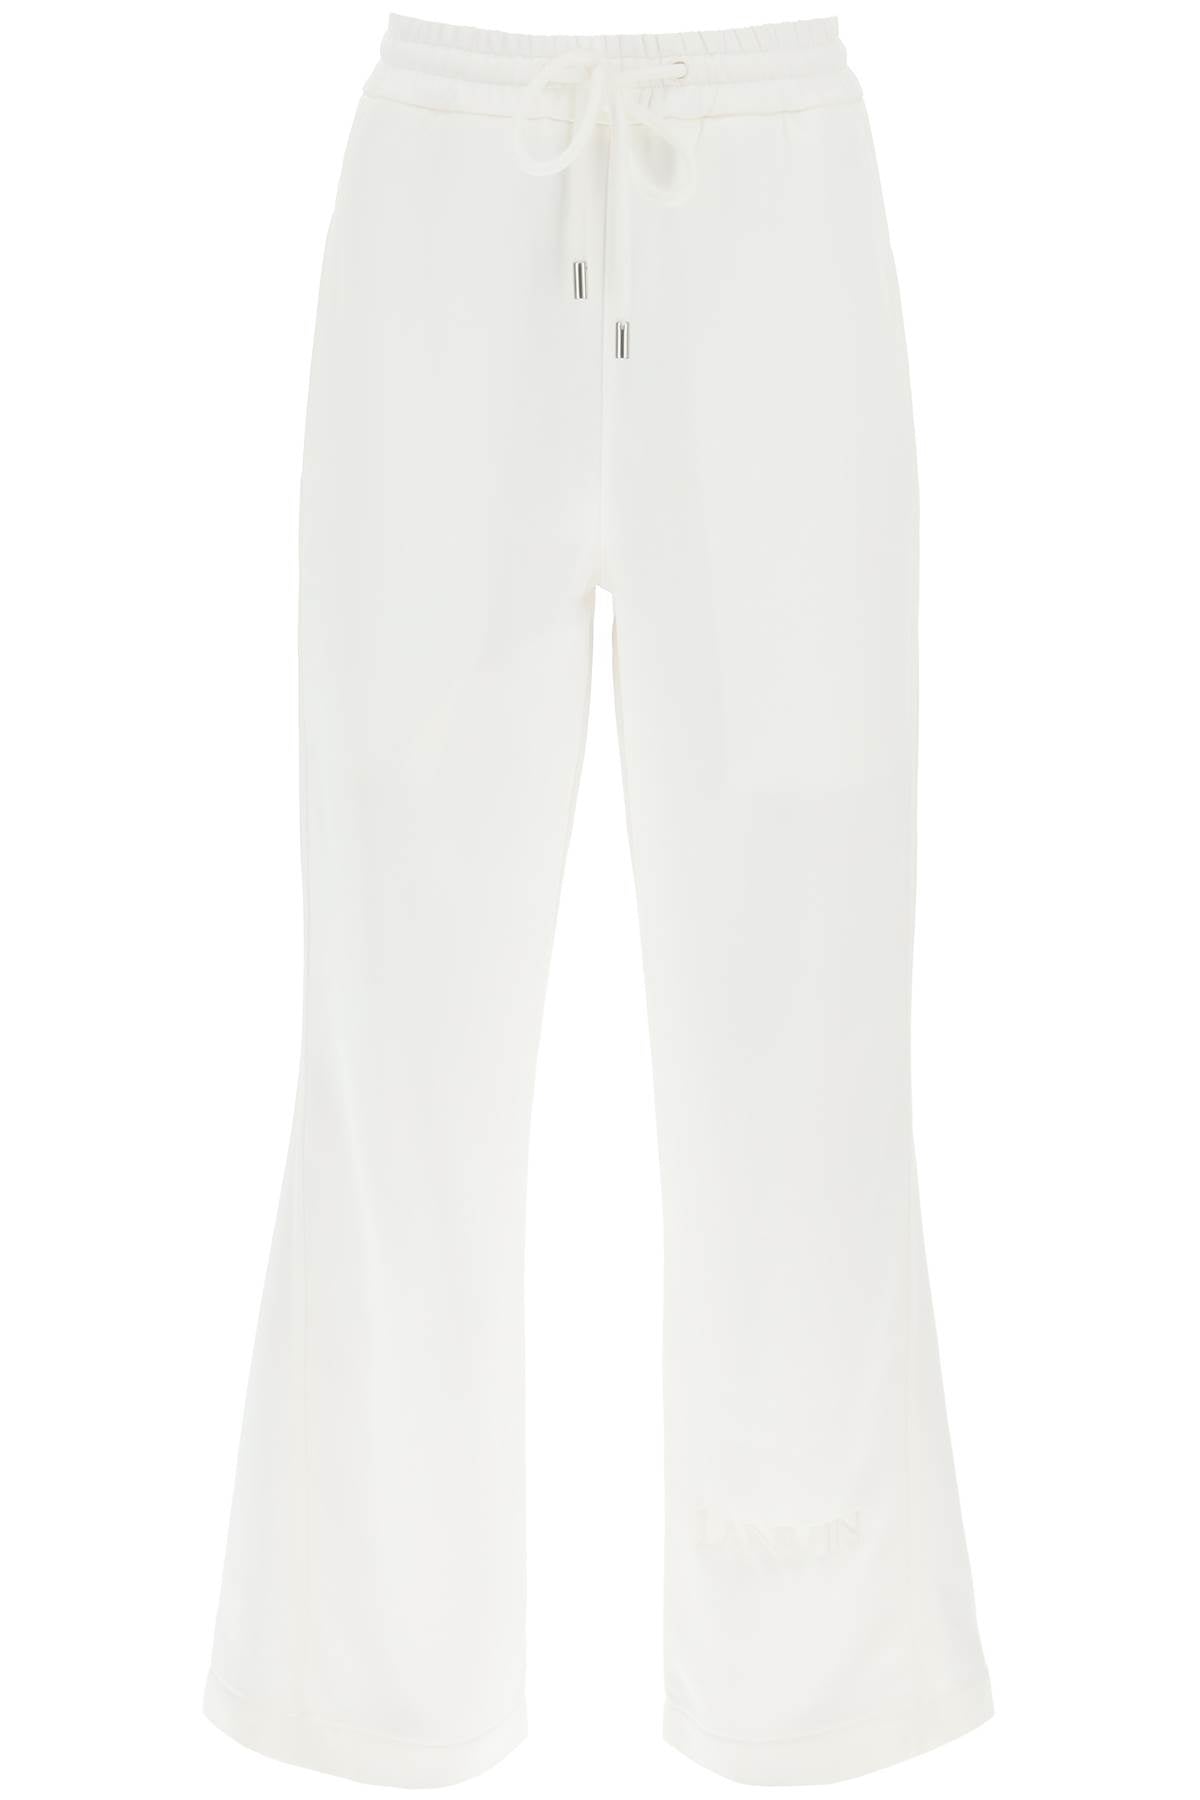 Lanvin viscose jogger pants - White